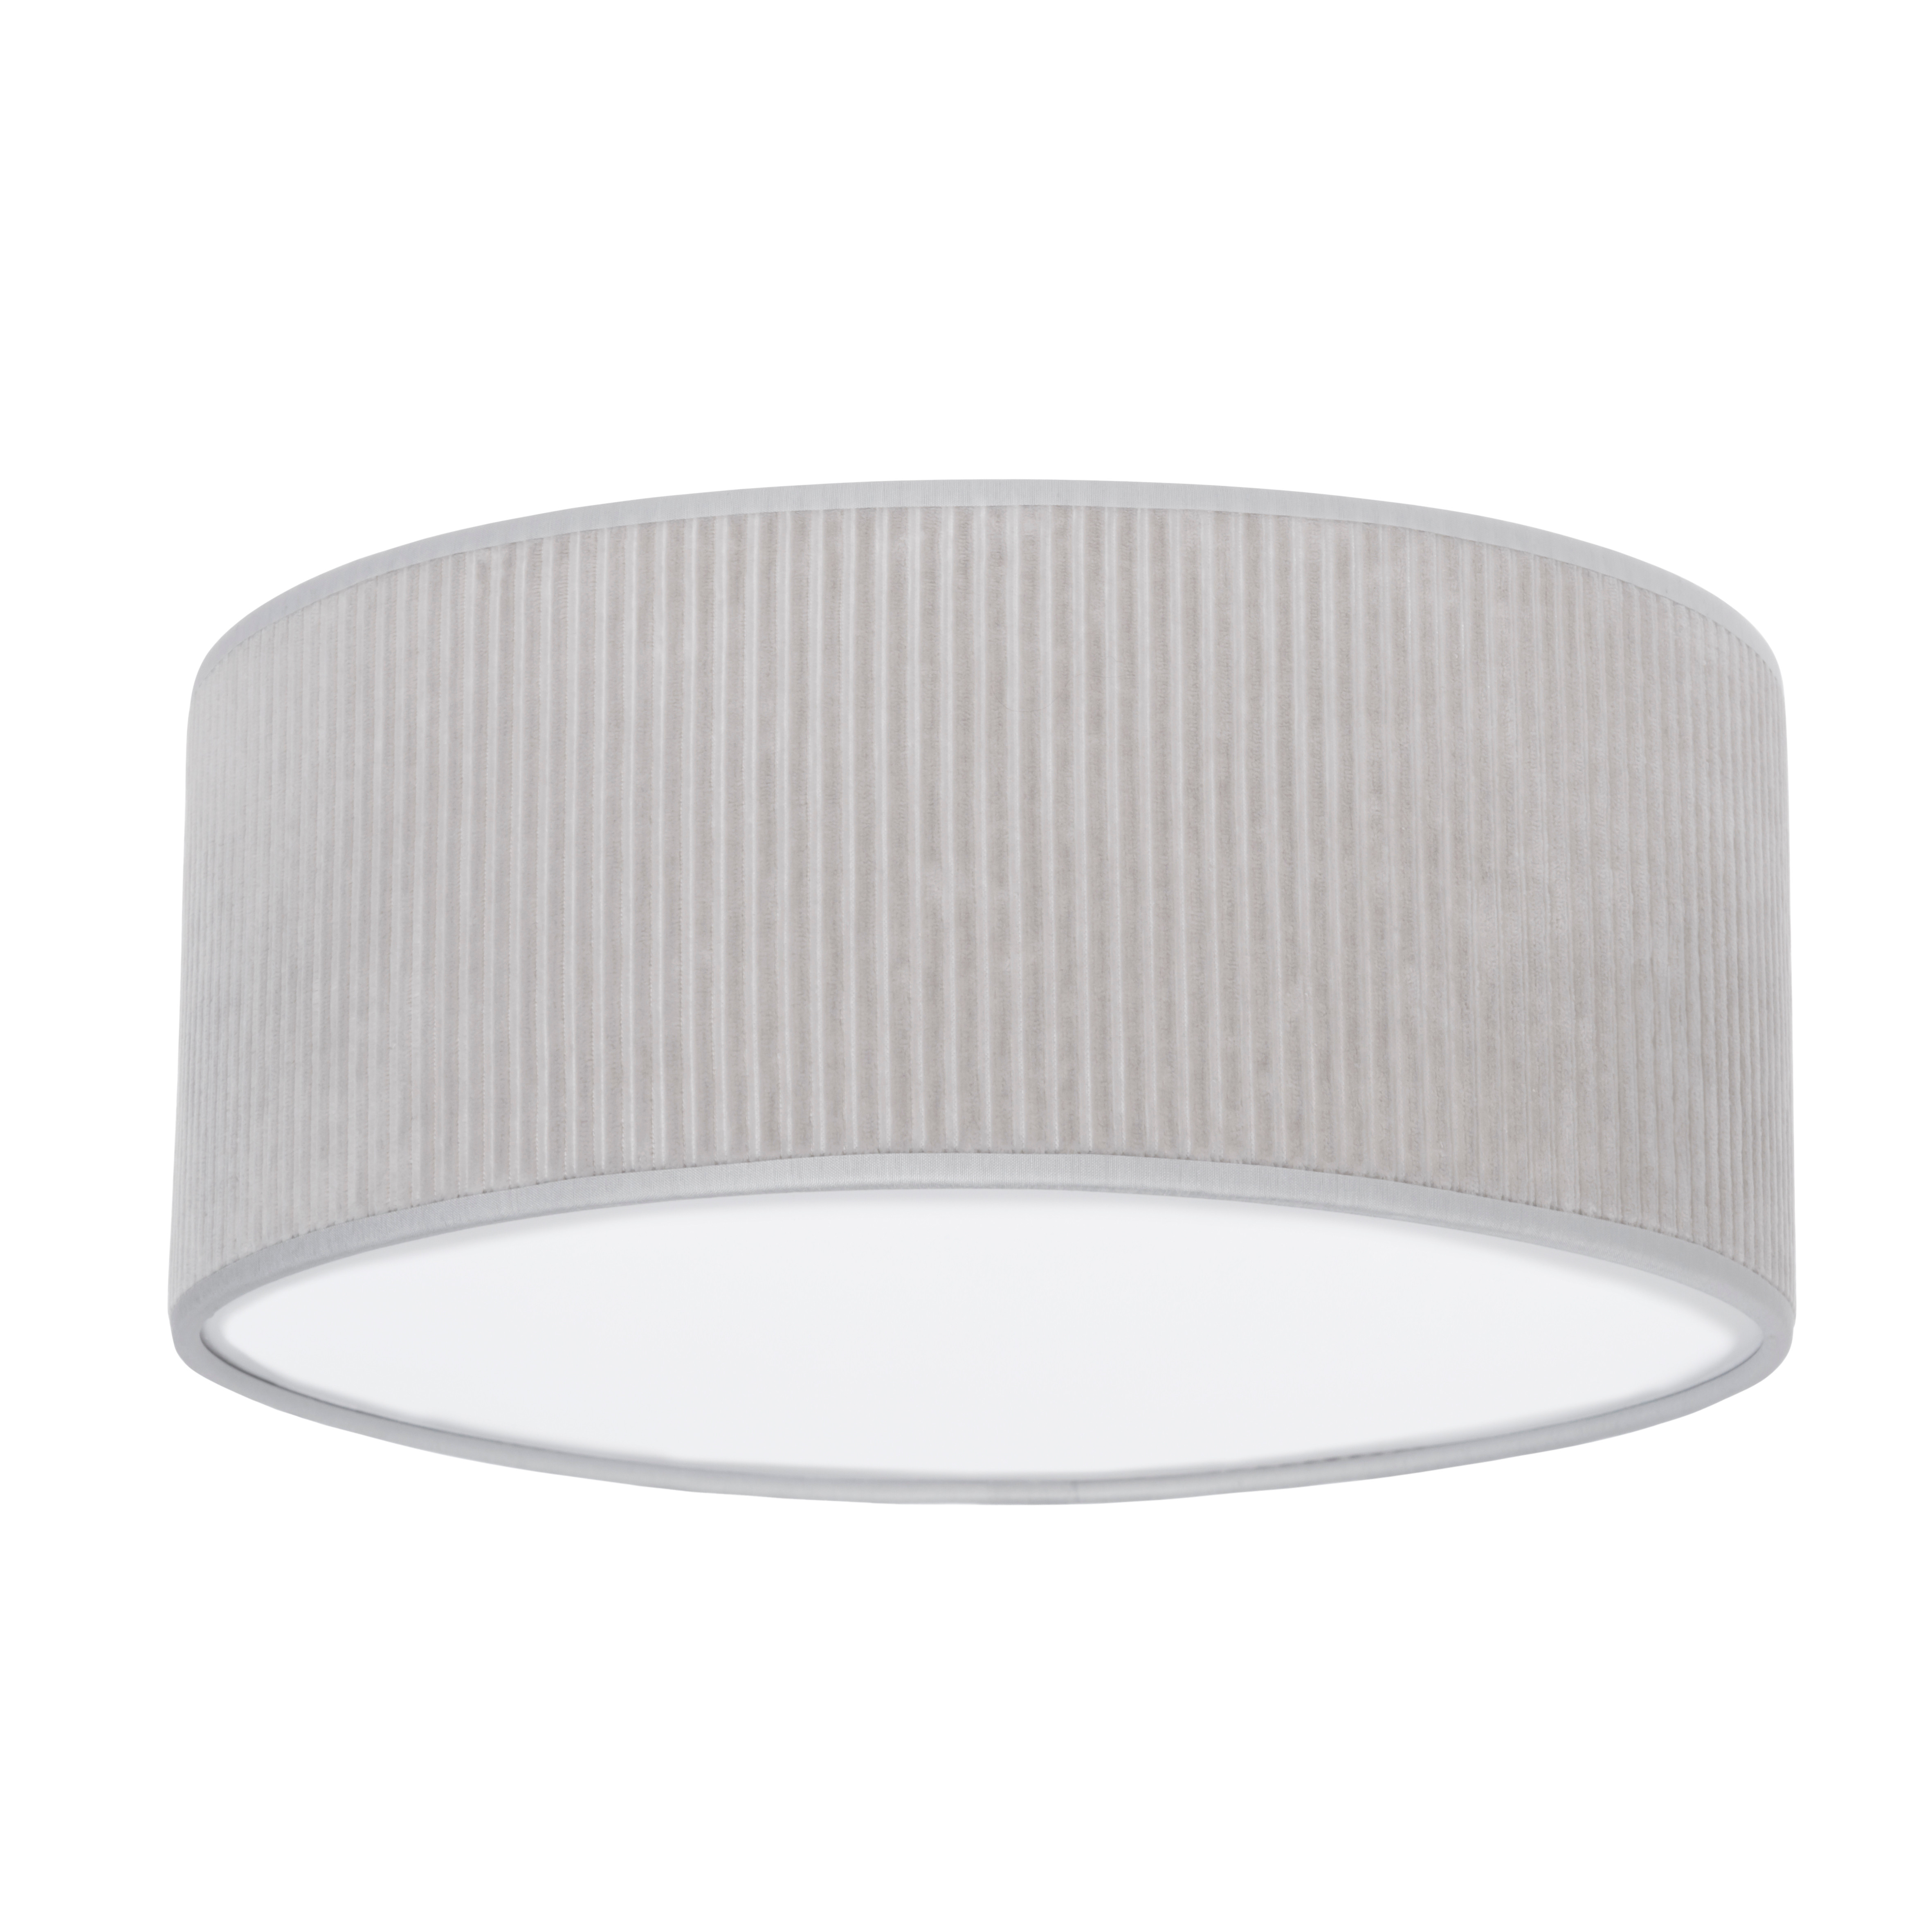 Lampe de plafond Sense caillou gris - Ø35 cm